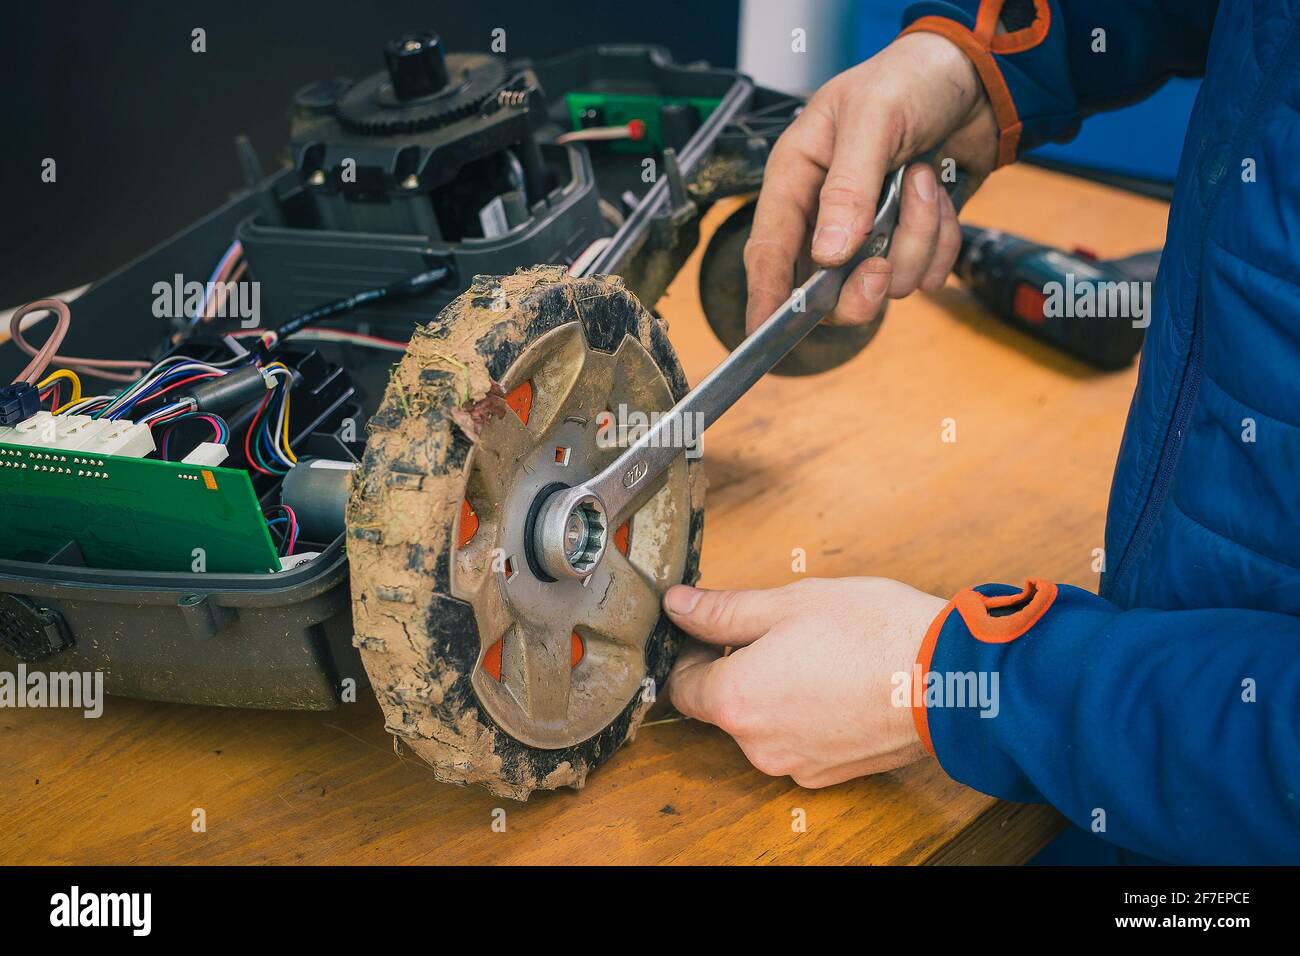 L'addetto alla manutenzione deve smontare e smontare le ruote sul rasaerba  robotizzato, il rasaerba motorizzato deve essere sottoposto a manutenzione  su un tavolo dopo un anno di utilizzo nel fango e nell'erba